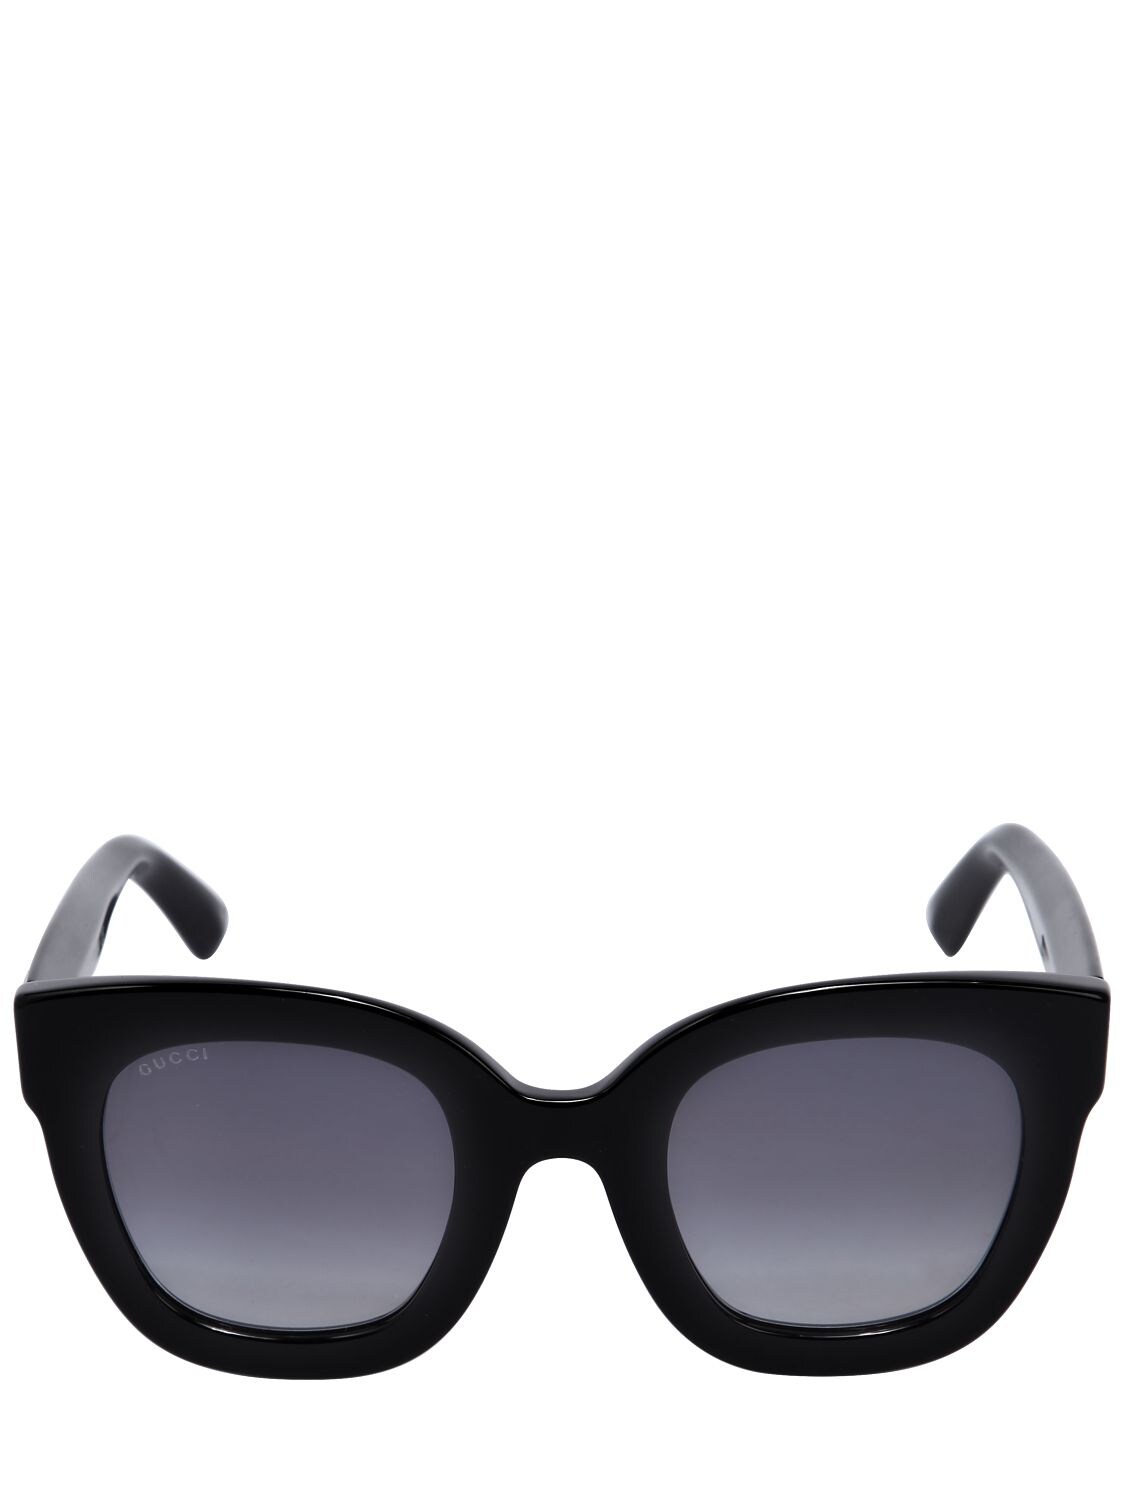 Gucci Square Acetate Sunglasses W/ Stars In Black